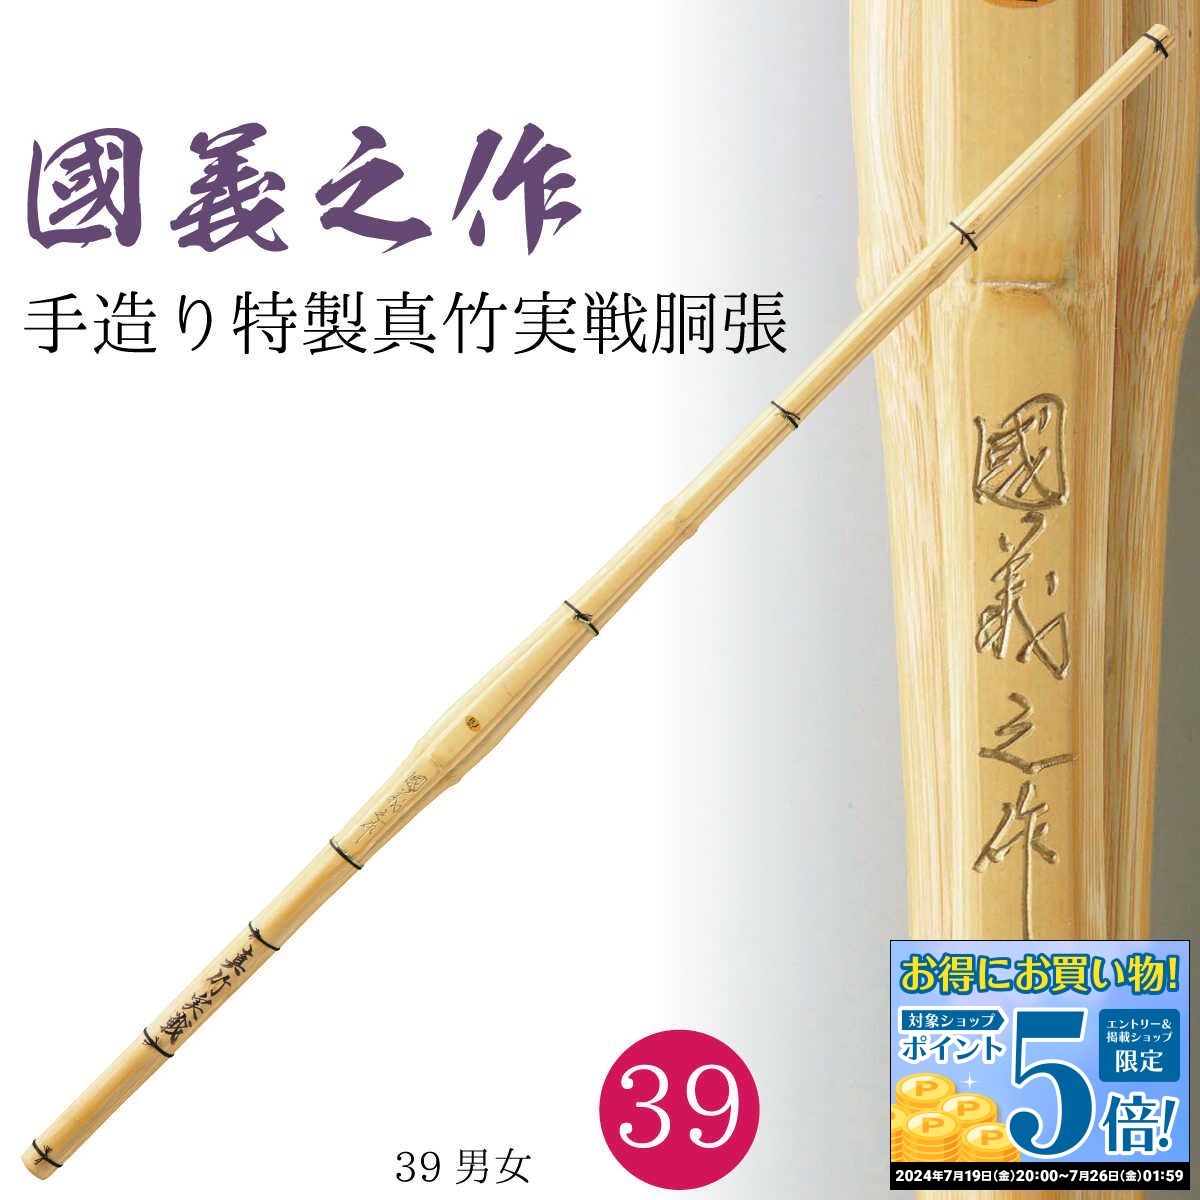 剣道 竹刀 39 手造り特製真竹 実戦胴張『 國義之作 』実践型